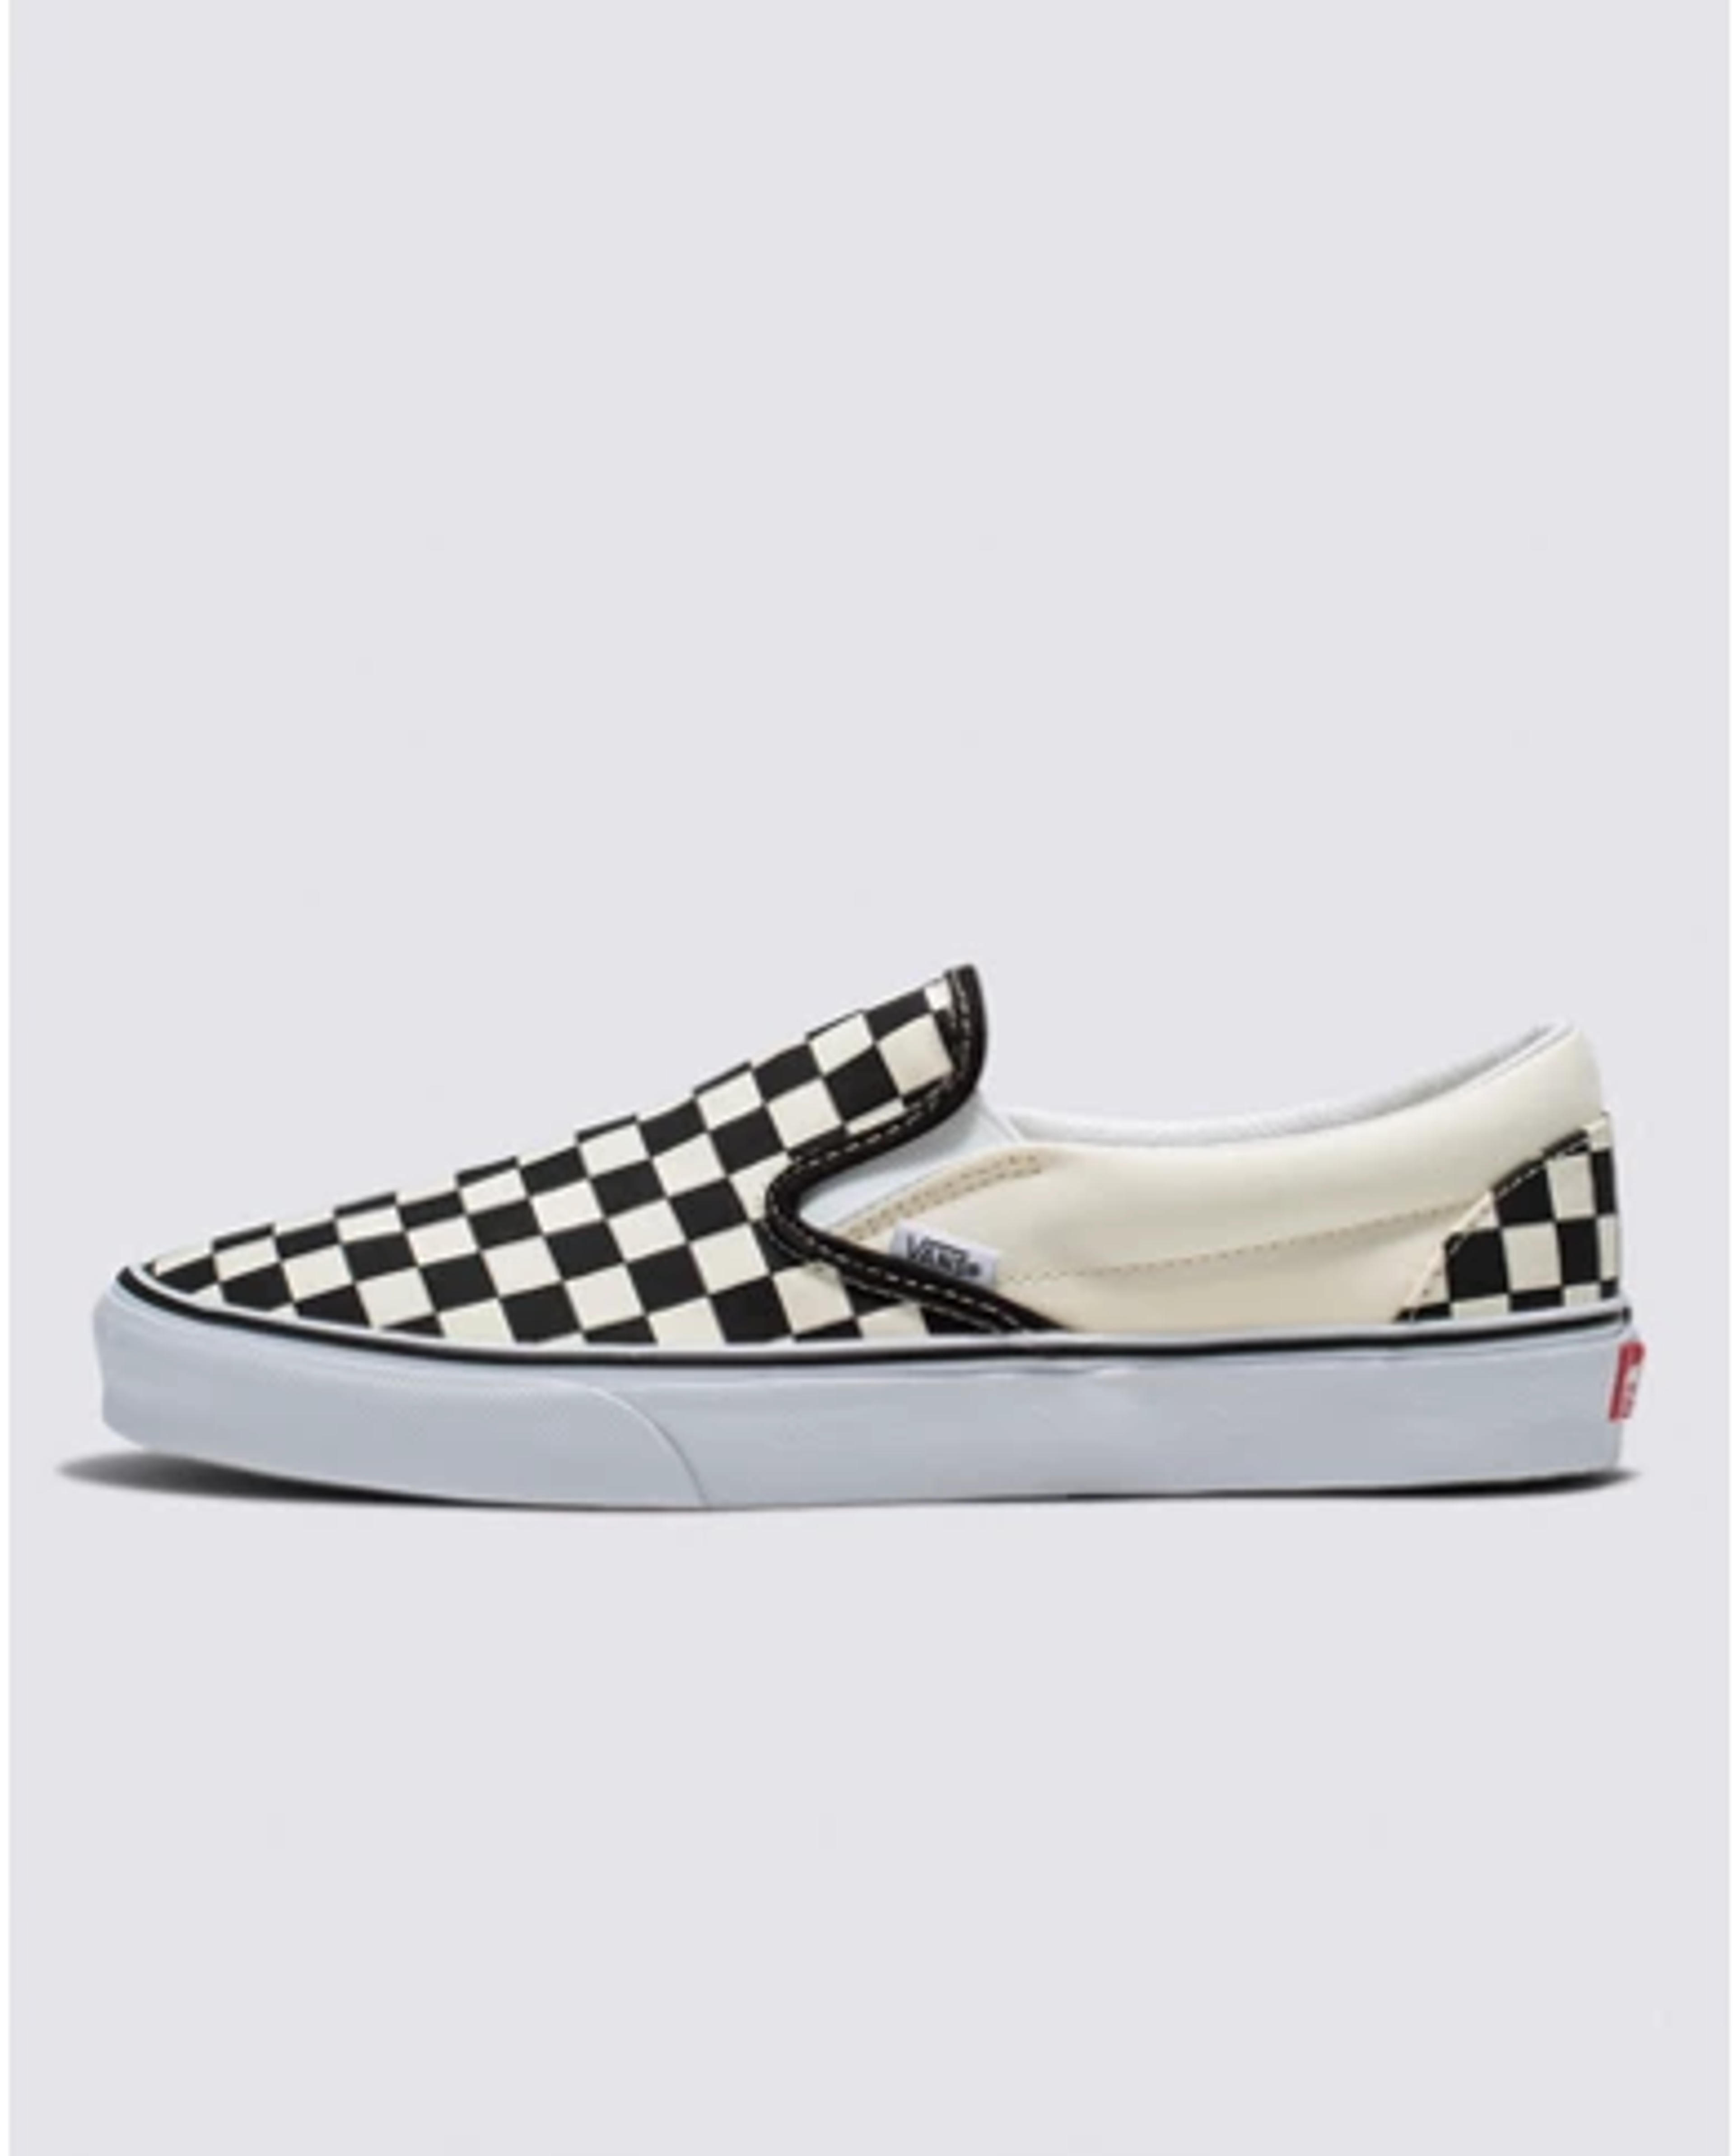 Classic Checkerboard Slip-On Black/White Shoe